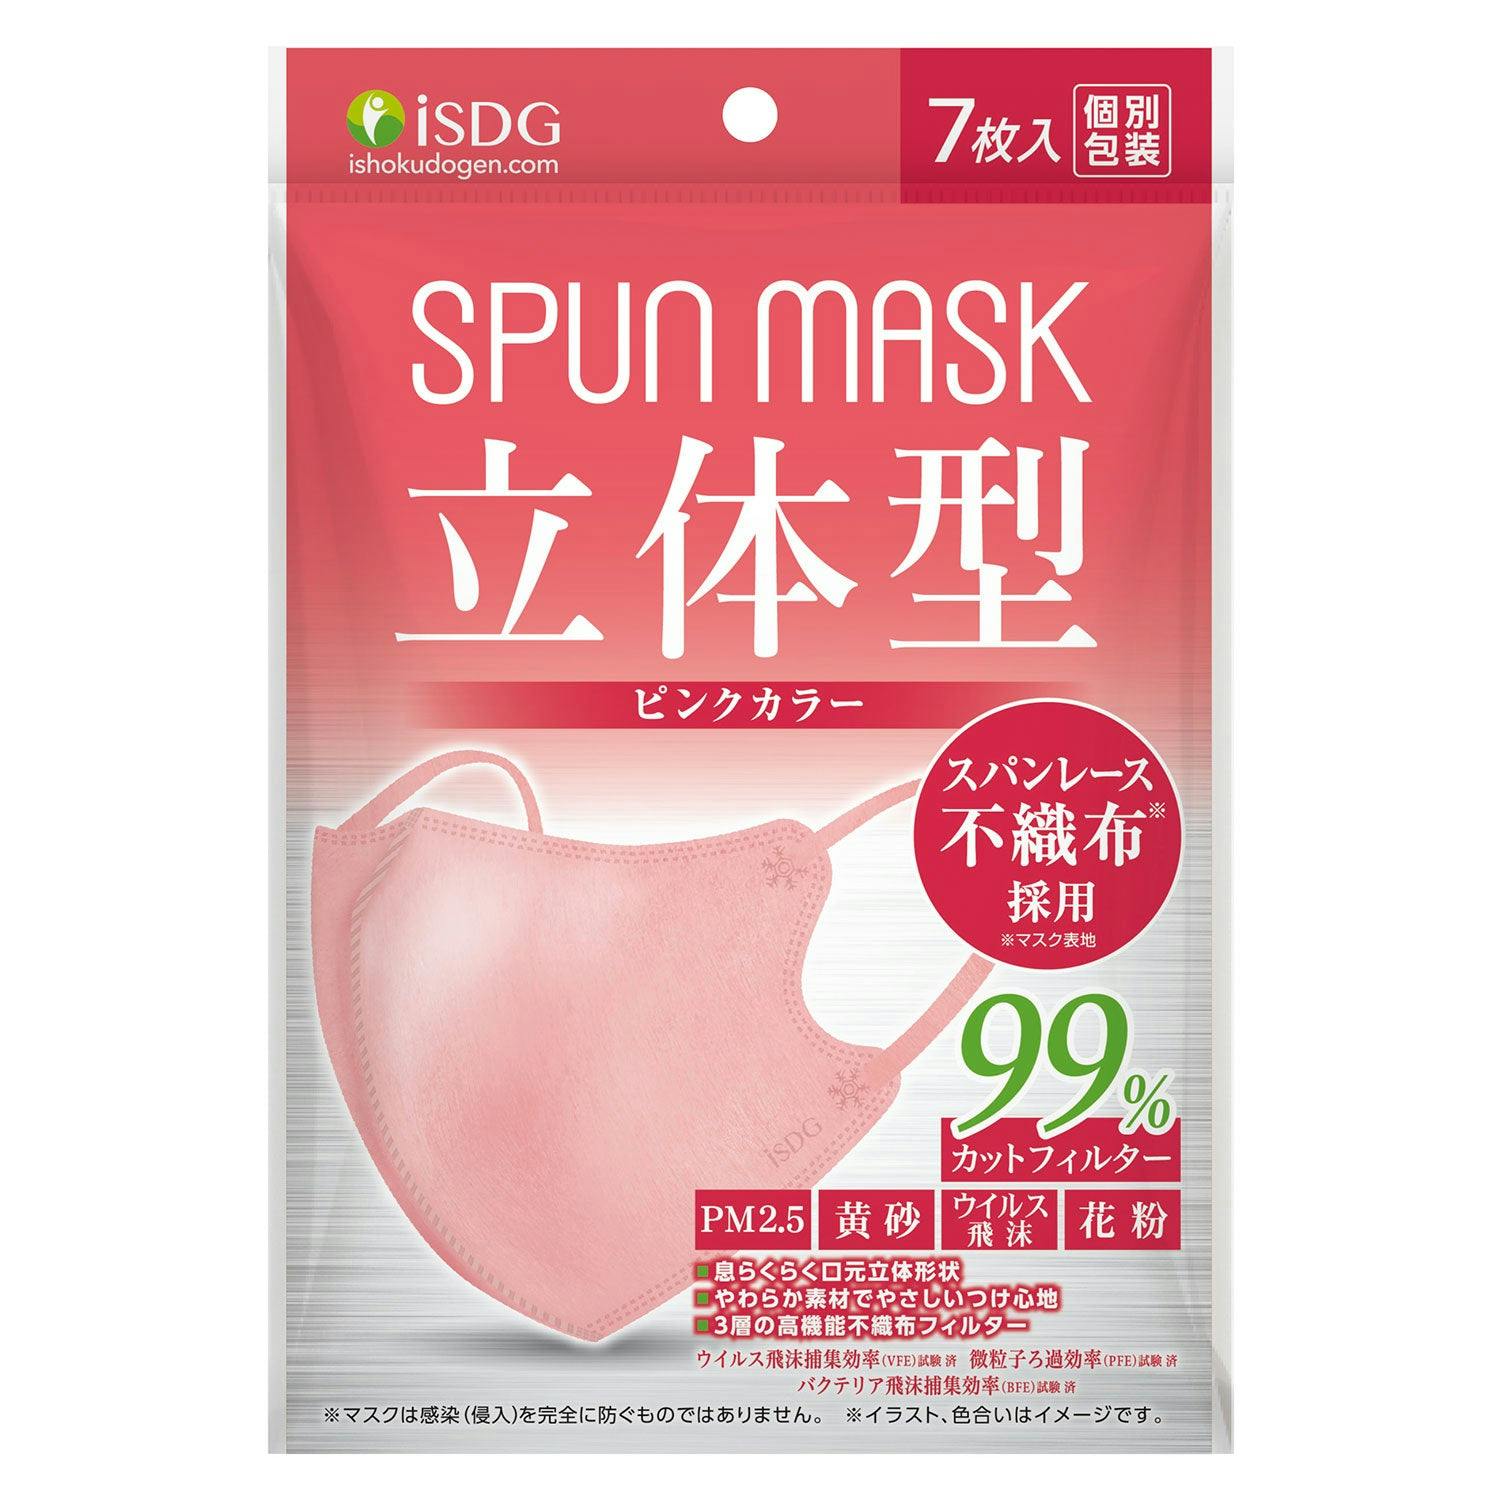 日本 ISDG 立体型  无纺布 彩色 口罩 SPUN MASK  独立包装 7枚 粉色